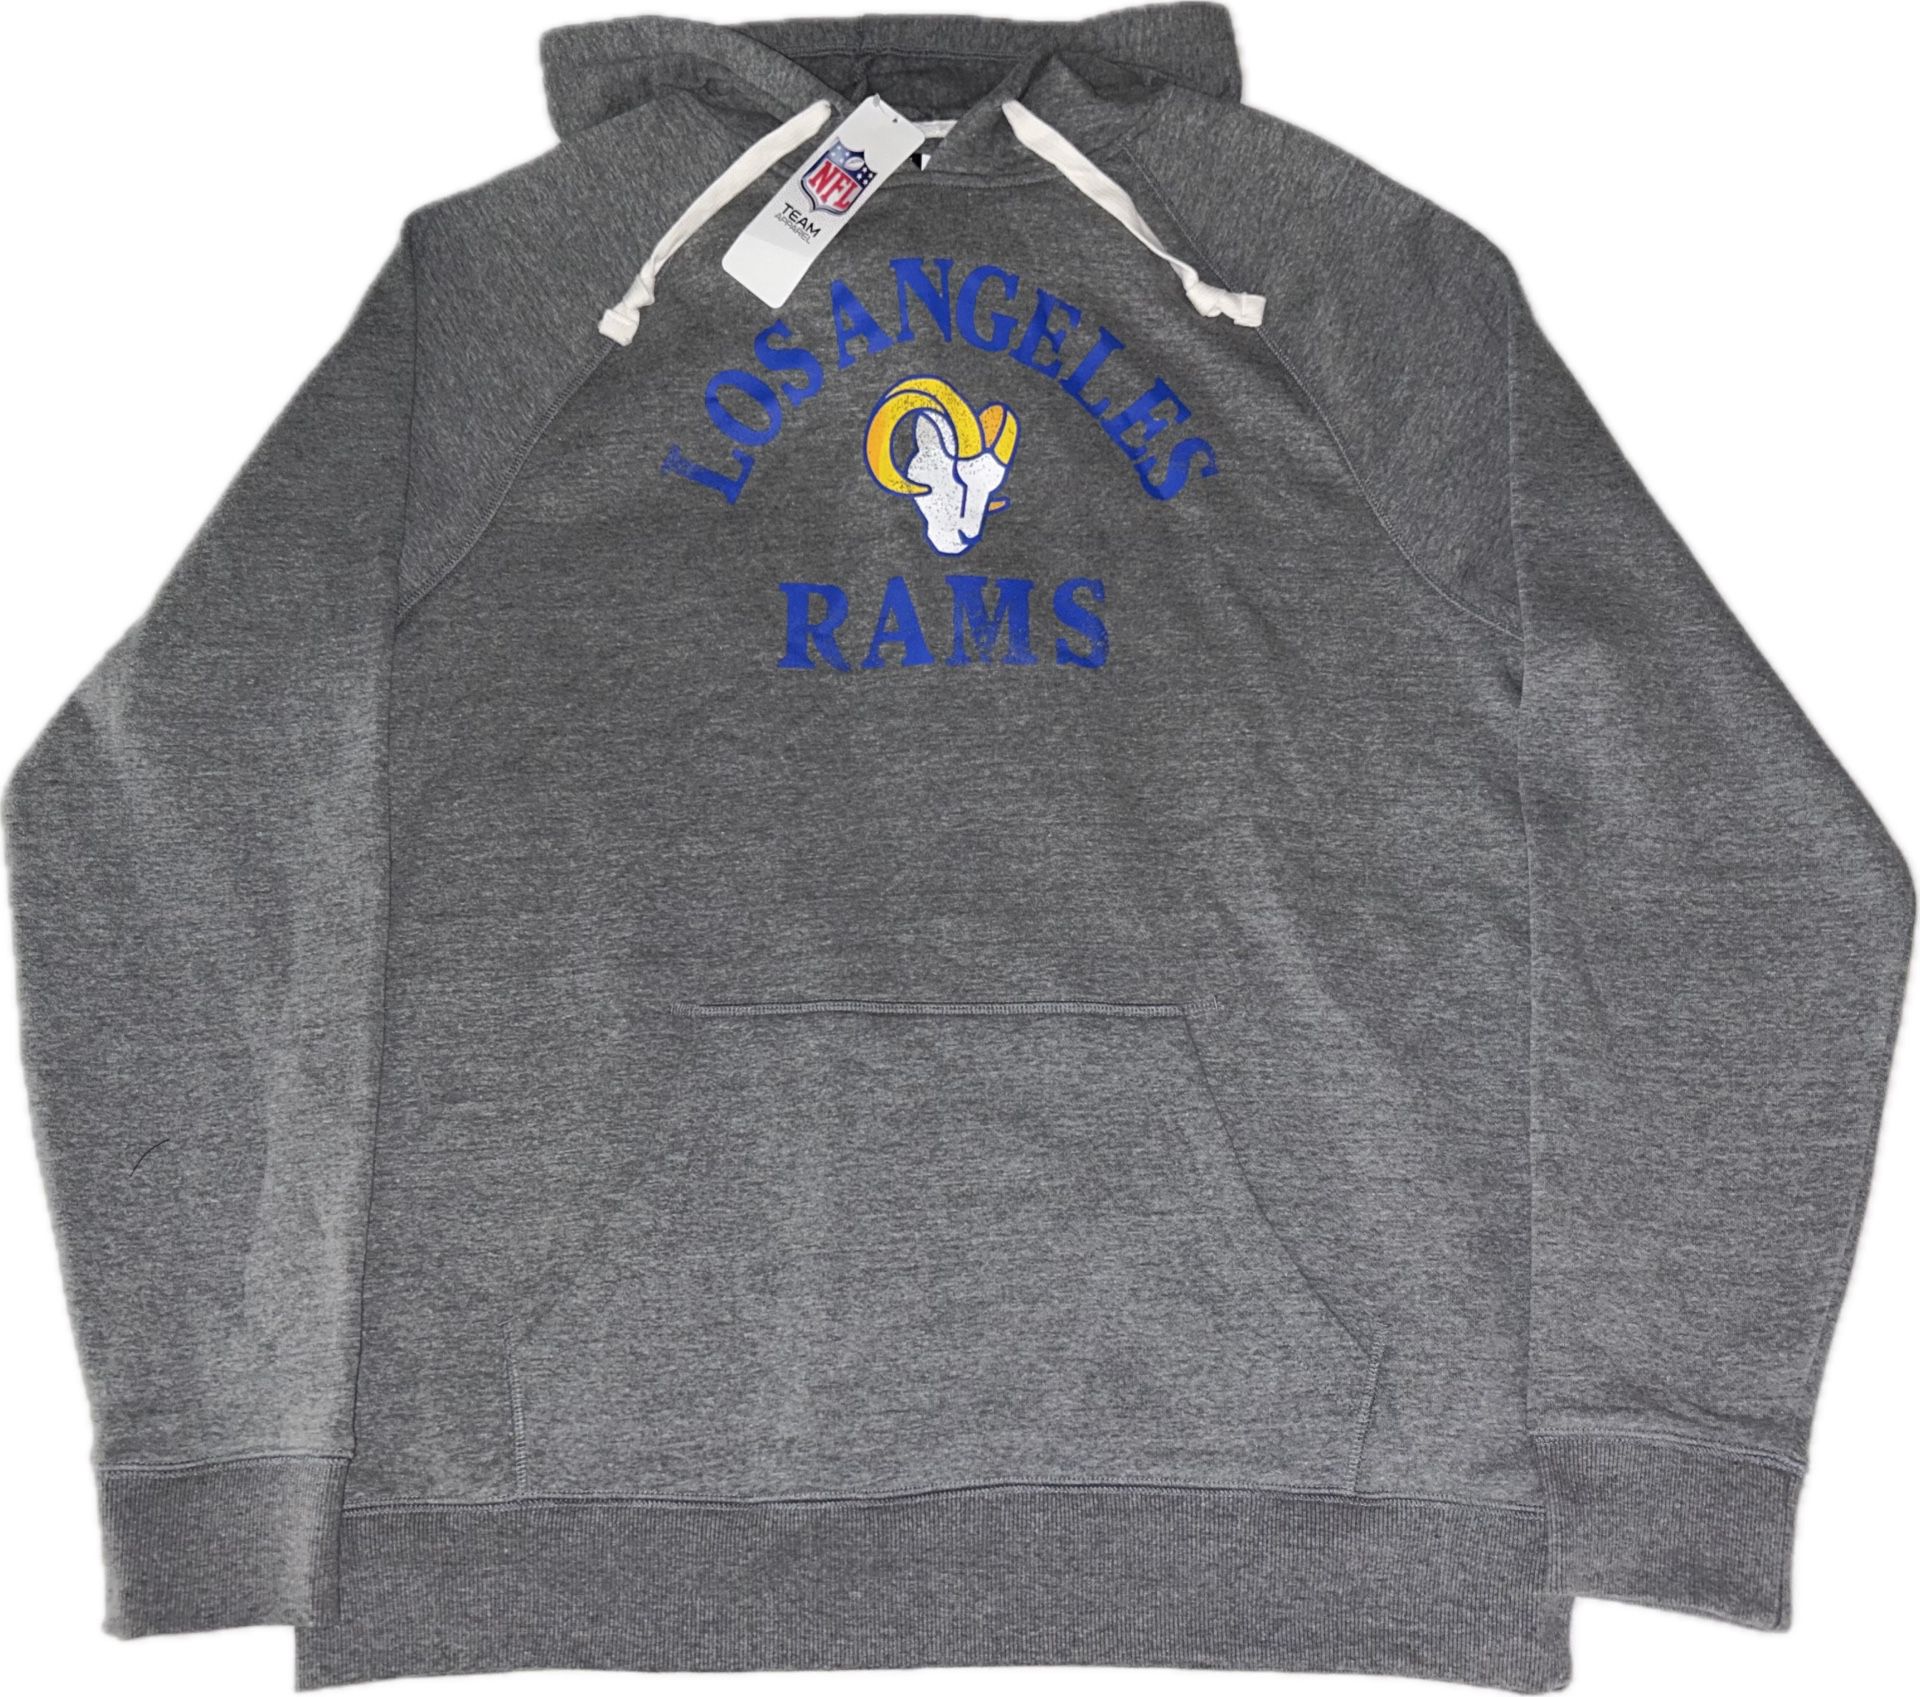 Los Angeles Rams Gray Pullover Hoodie Sweatshirt Men’s Large New 